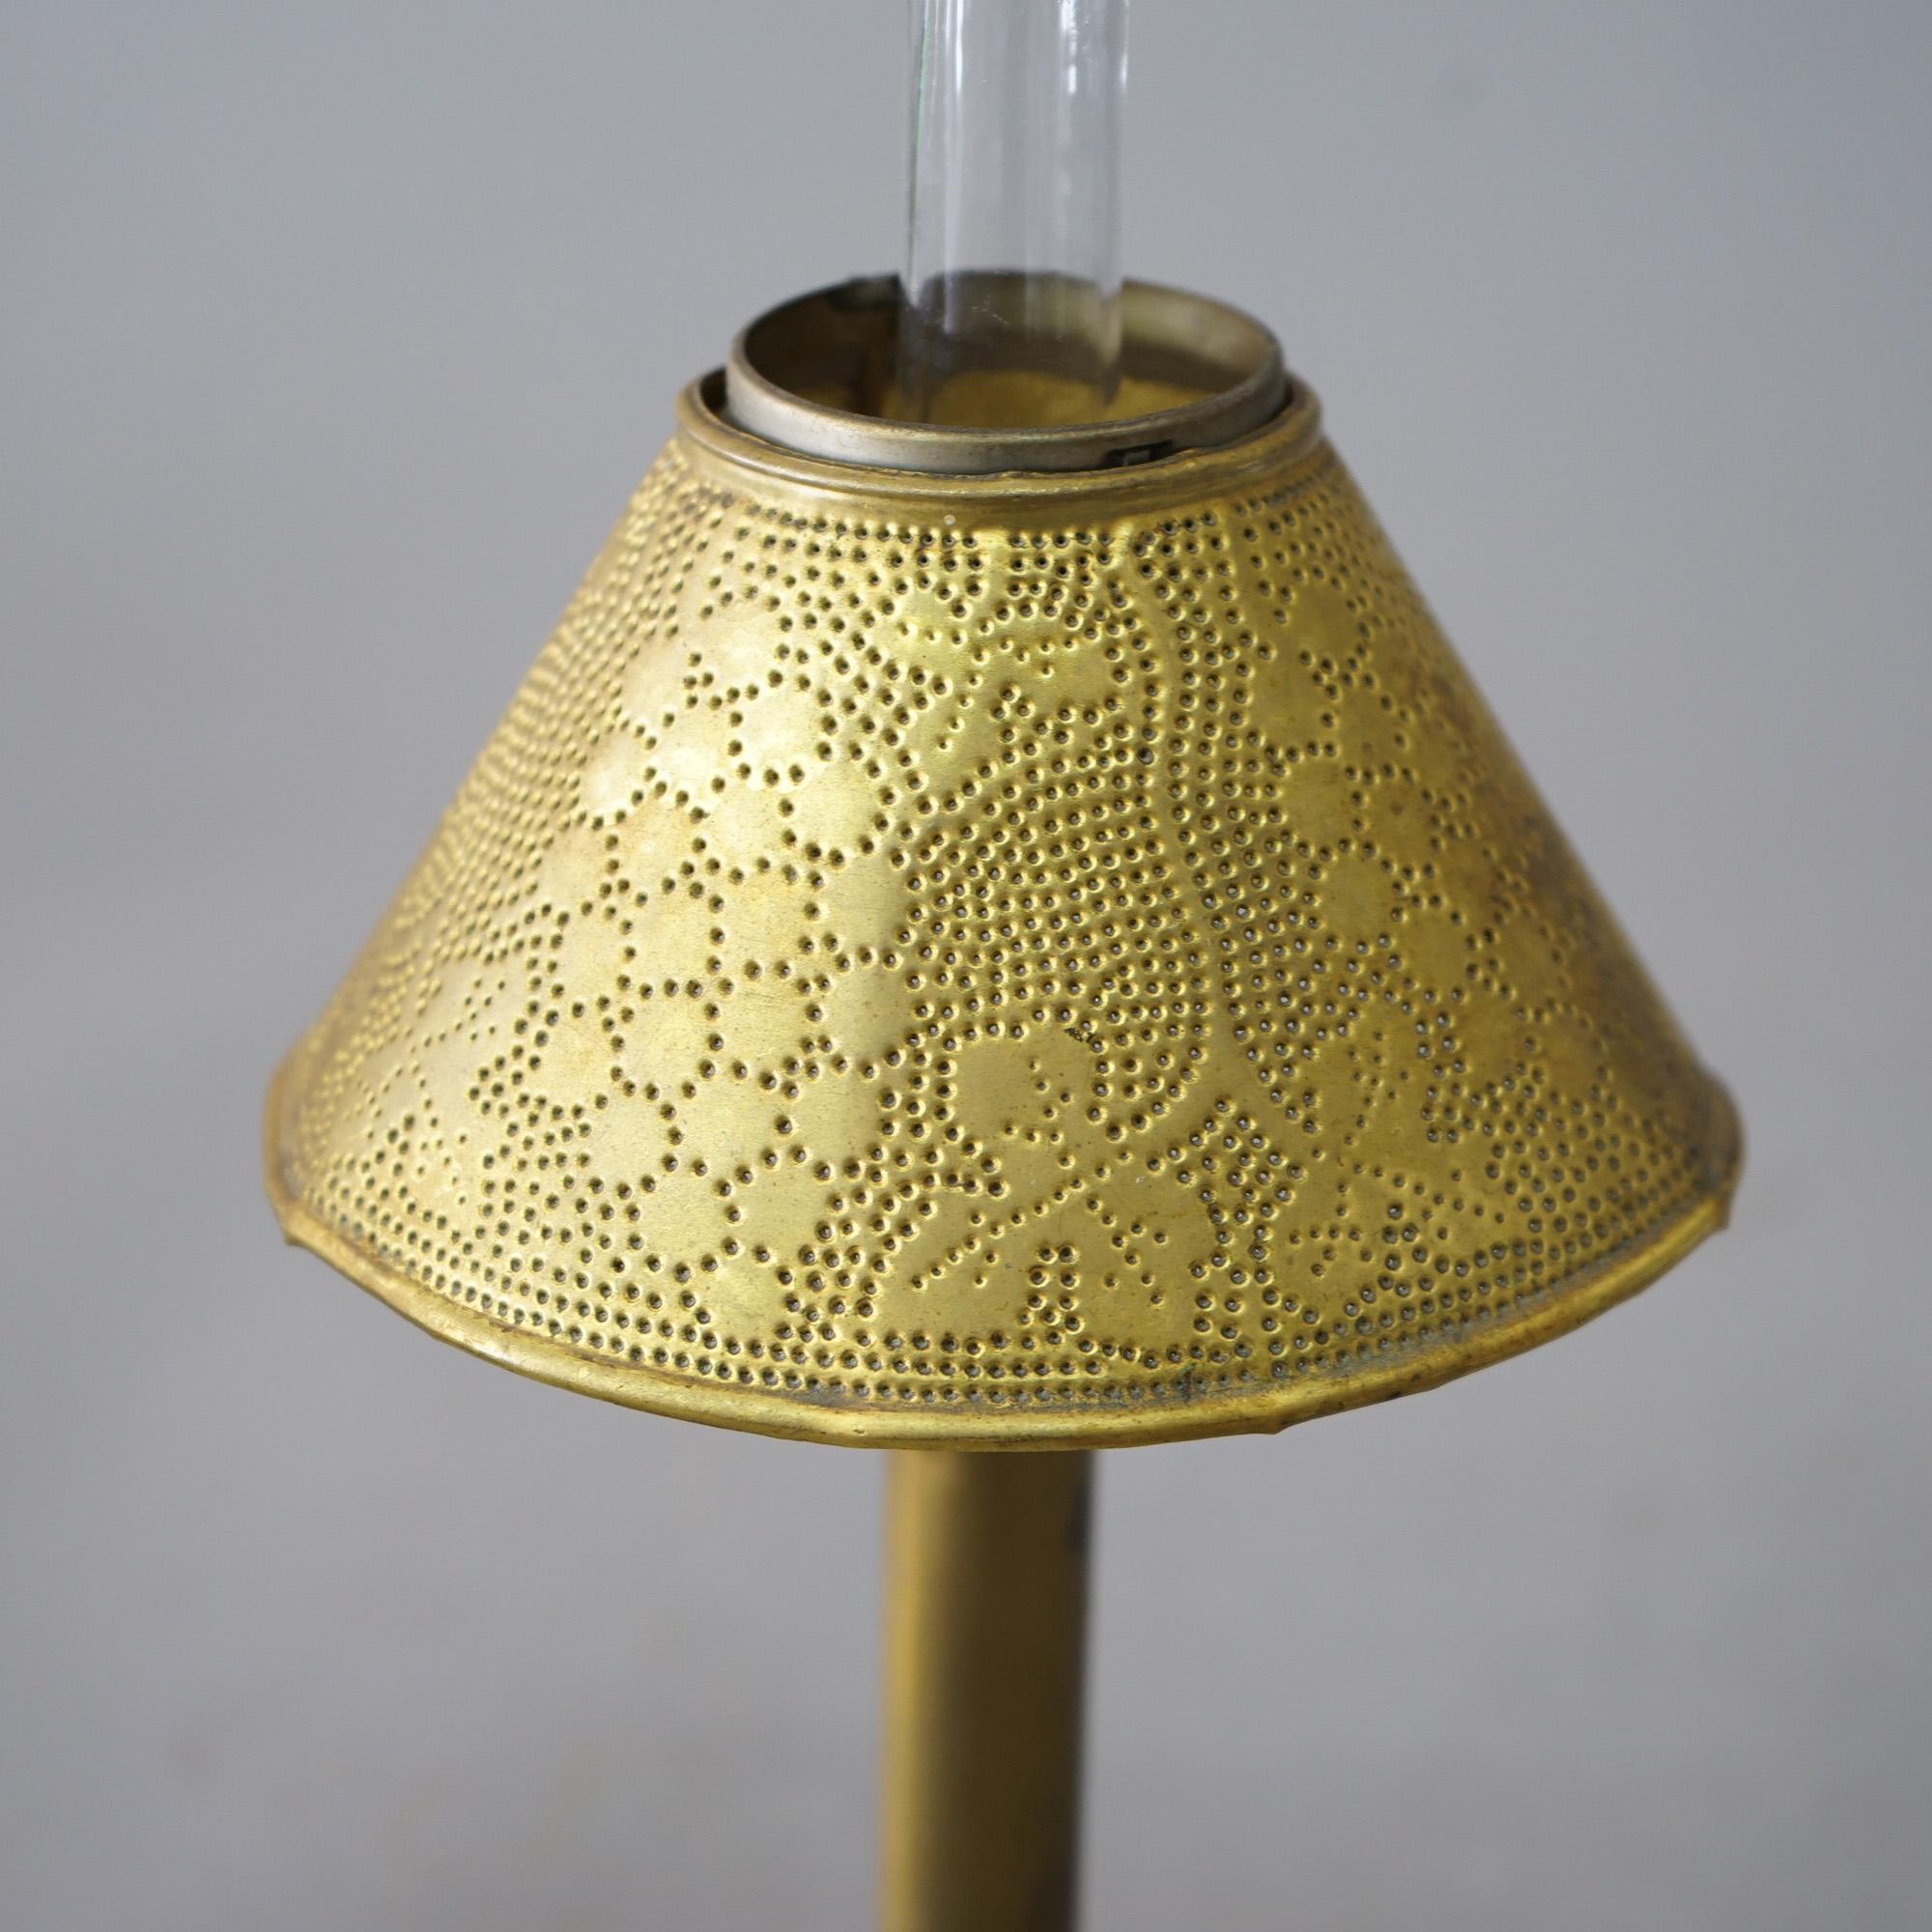 Ein Paar Arts and Crafts Miniatur-Öllampen aus Messing mit gestempelten Schirmen mit Trauben- und Blattmotiven, um 1900

Maße - 12,5 